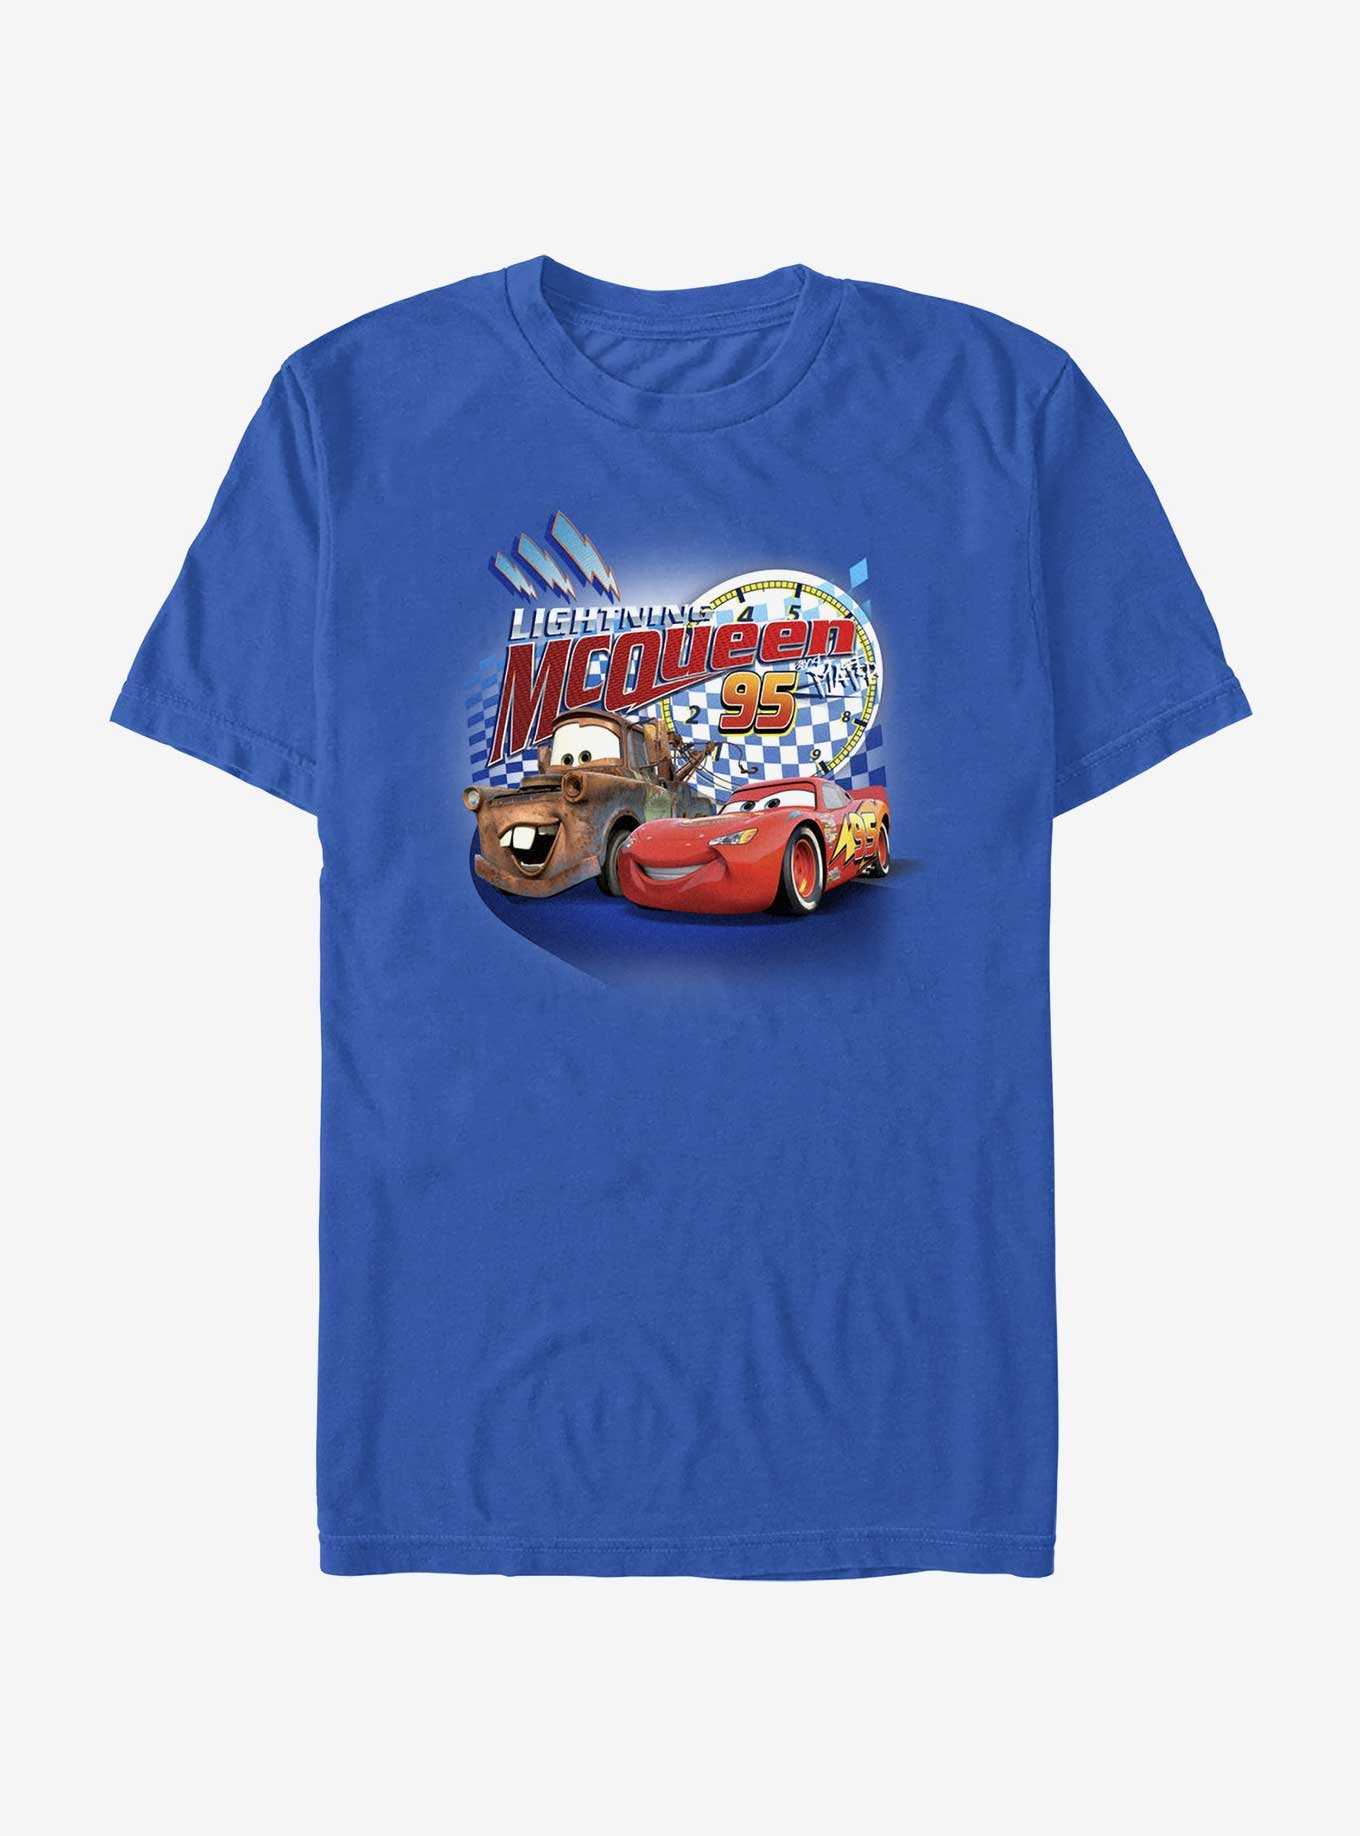 Disney Pixar Cars McQueen 95 T-Shirt, , hi-res